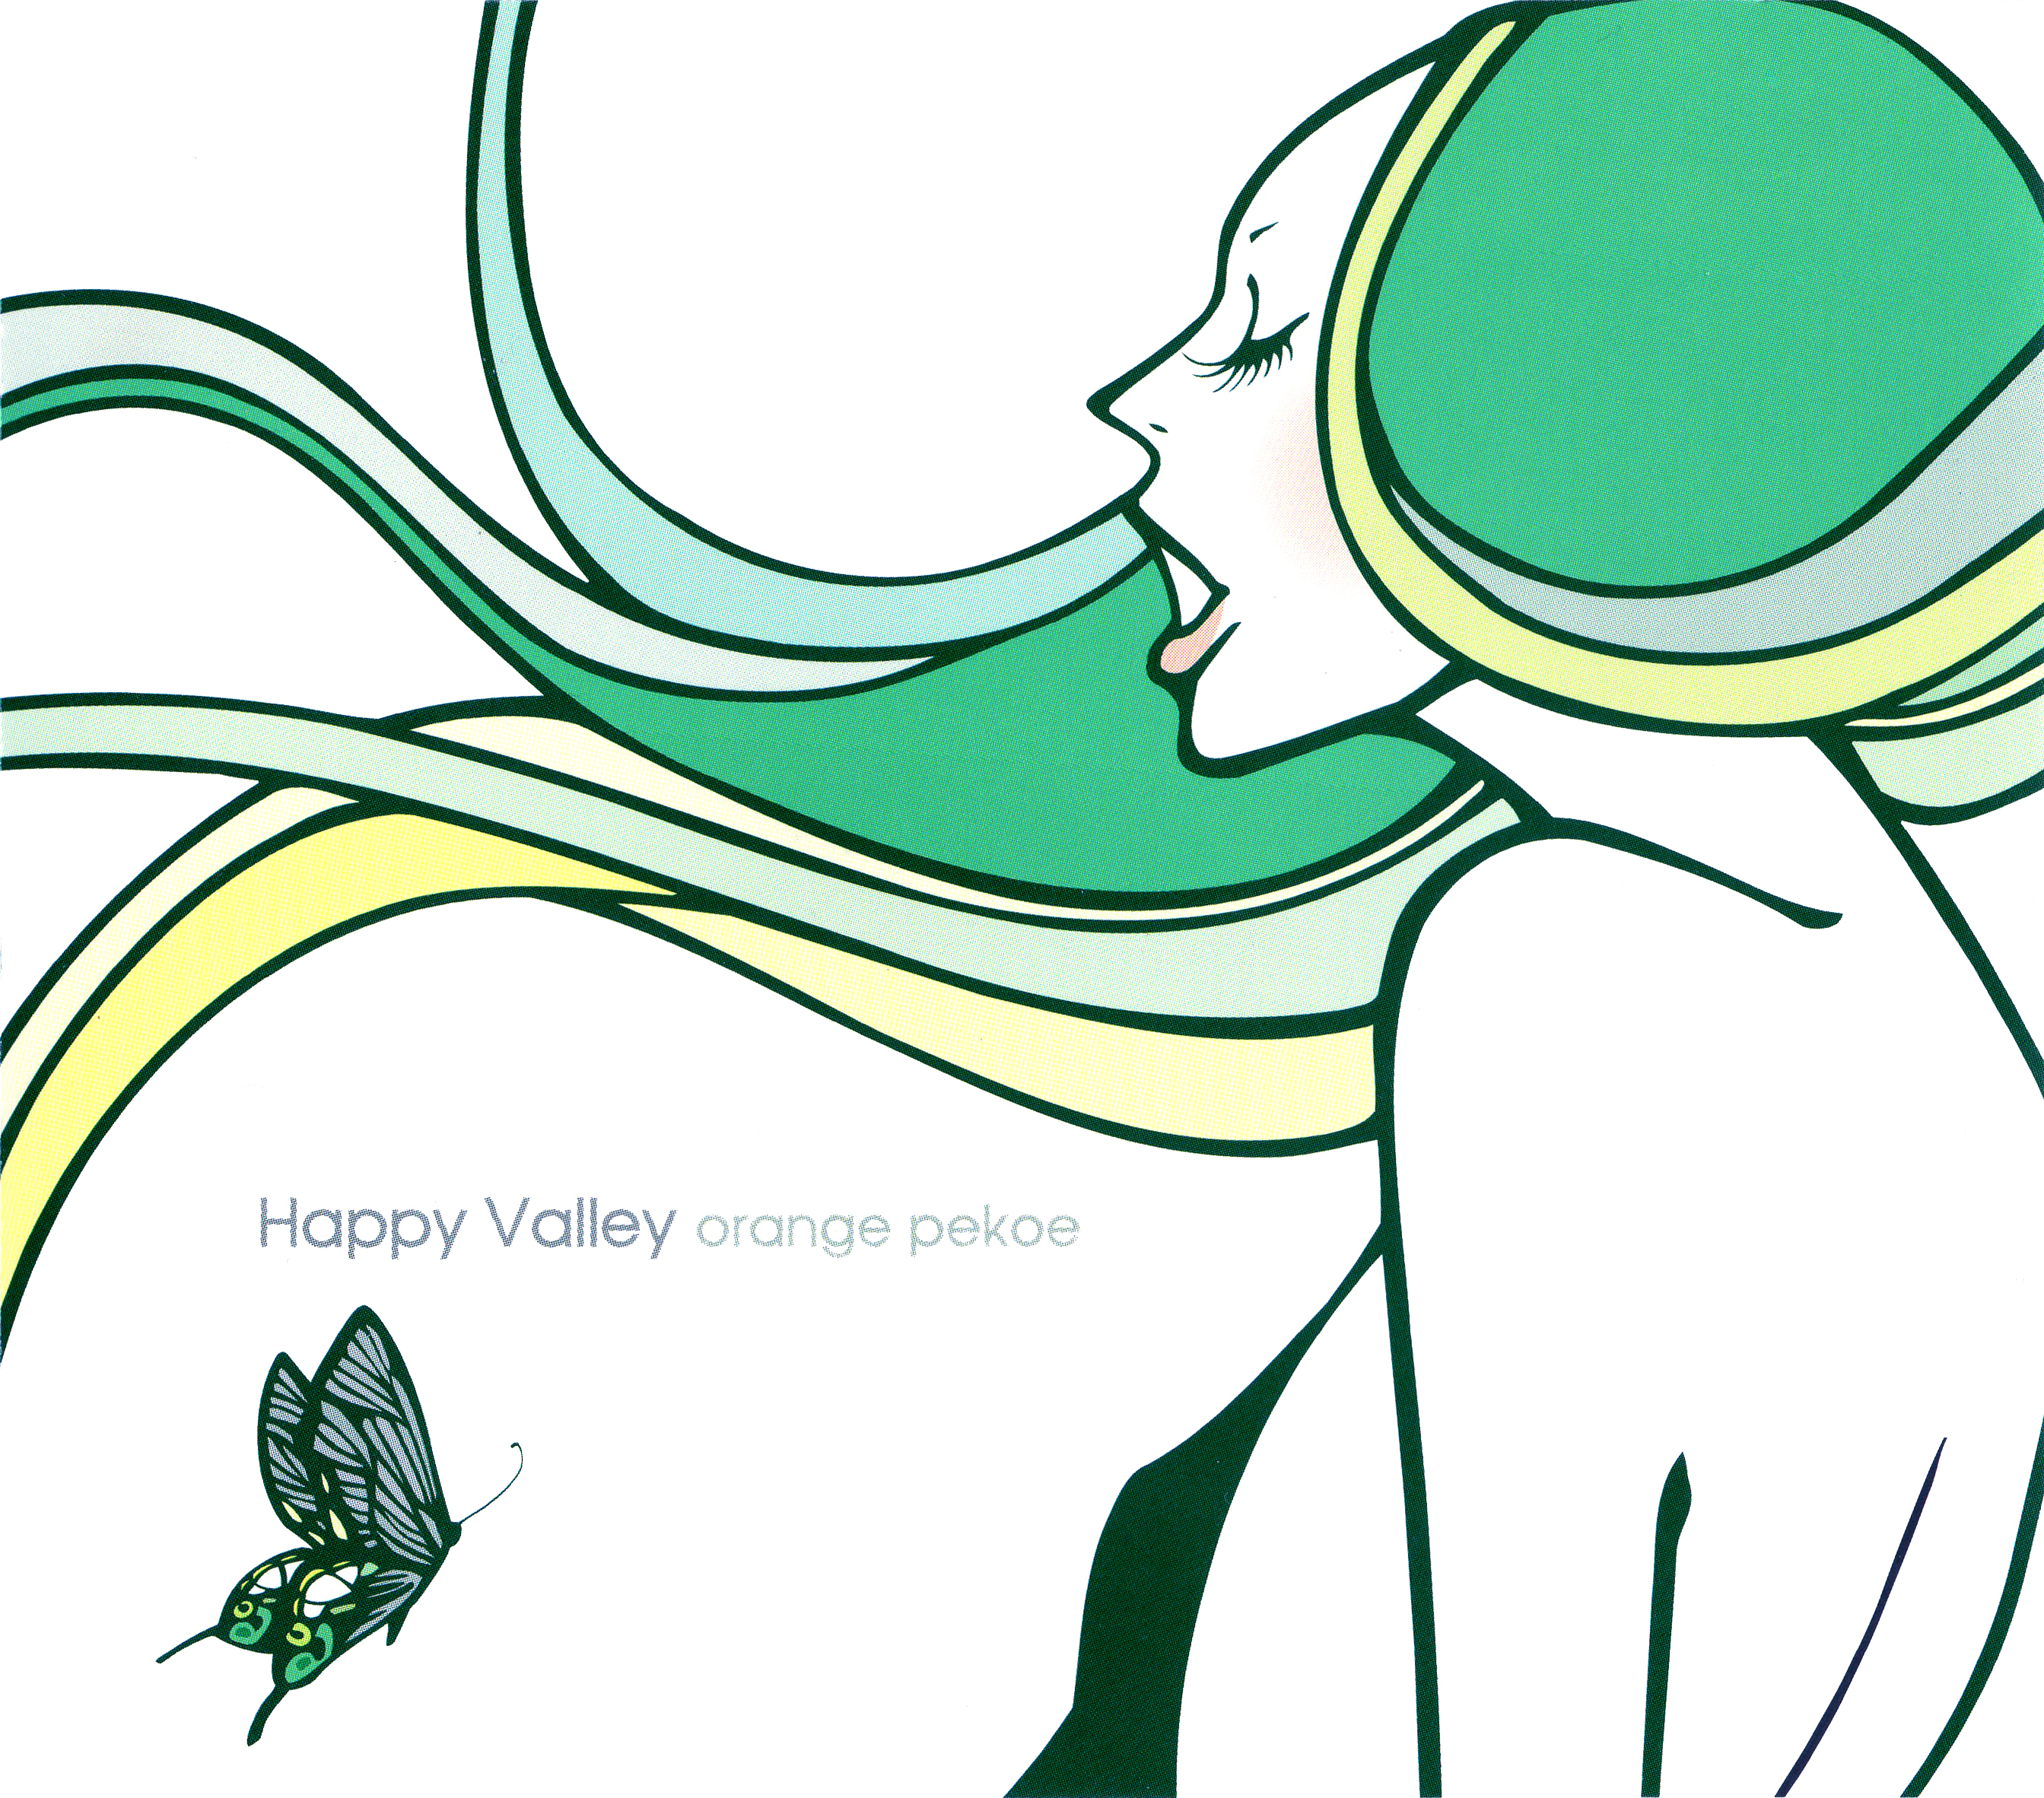 orange pekoe (オレンジ・ペコー) 3rdシングル『Happy Valley』(2002年4月24日発売) 高画質ジャケット画像